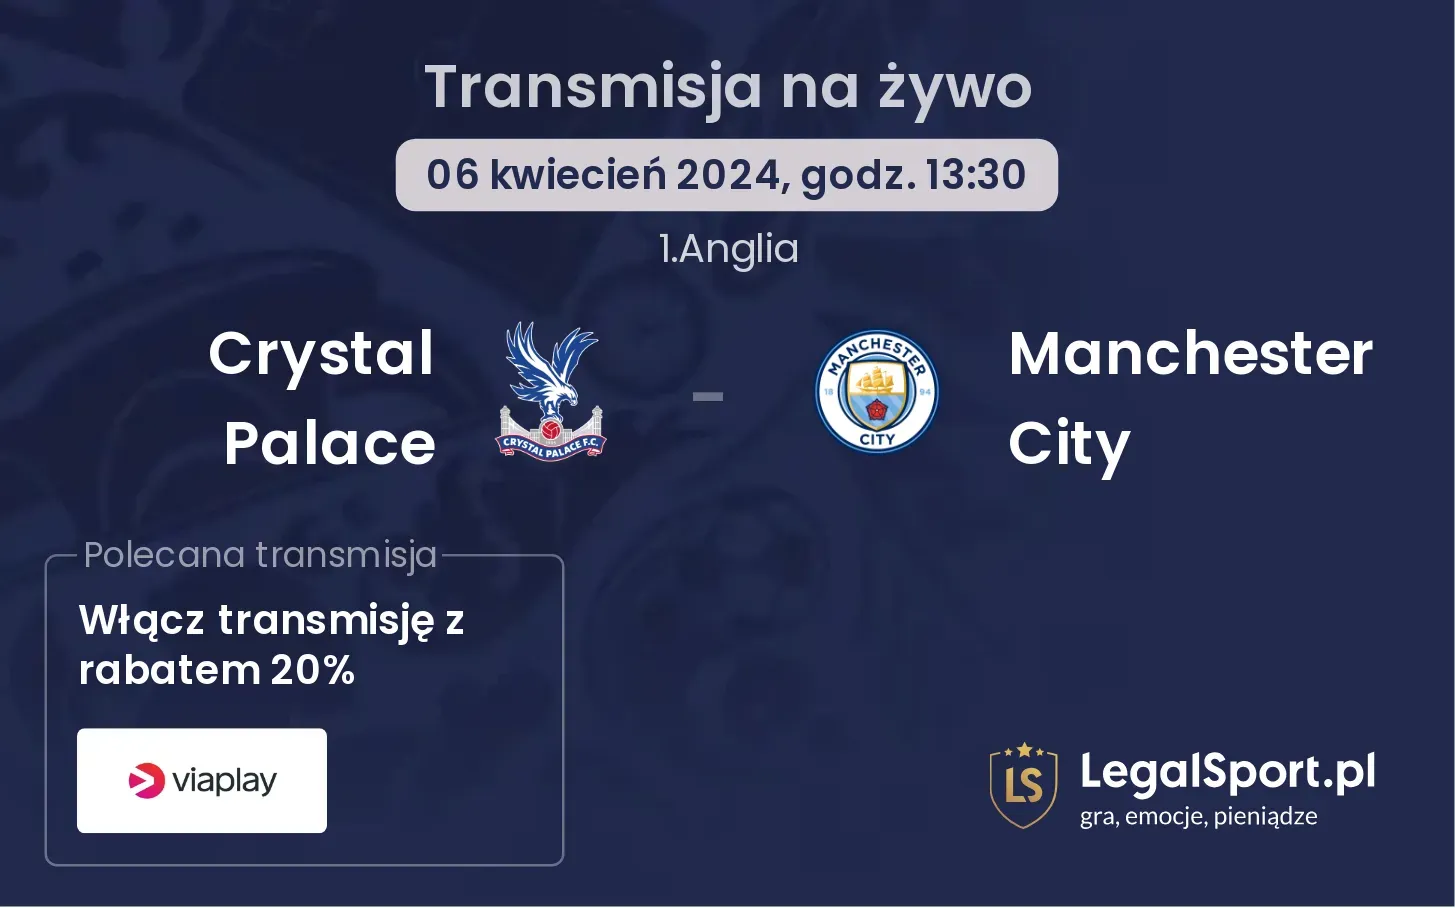 Crystal Palace - Manchester City transmisja na żywo